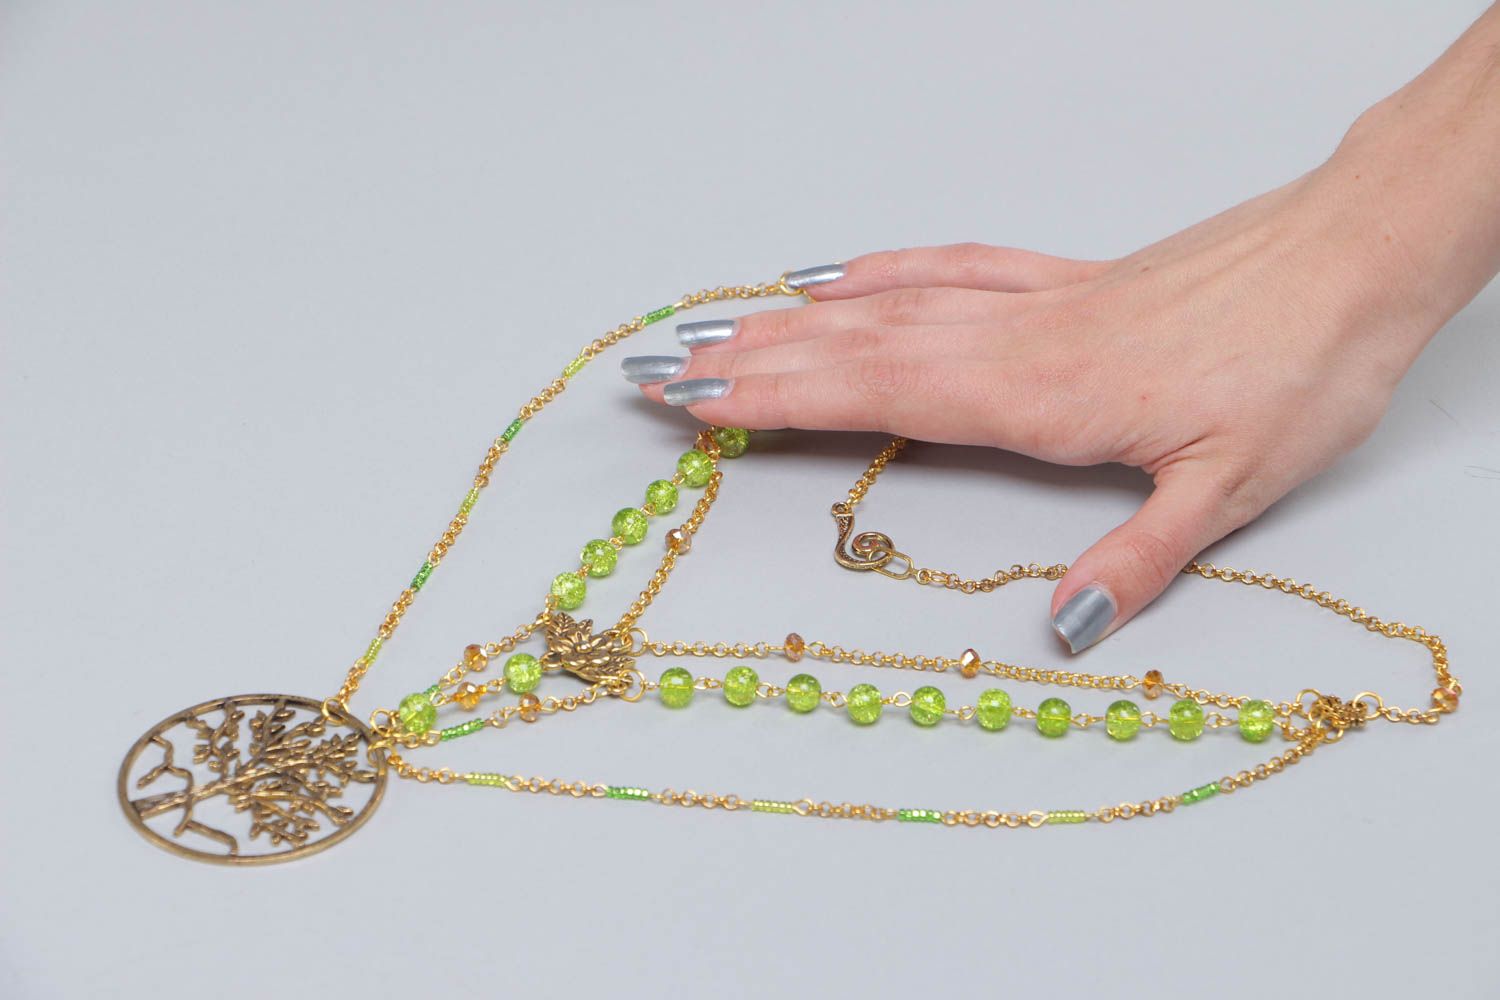 Long collier en perles de verre vertes et chaînette fait main Arbre de vie photo 5